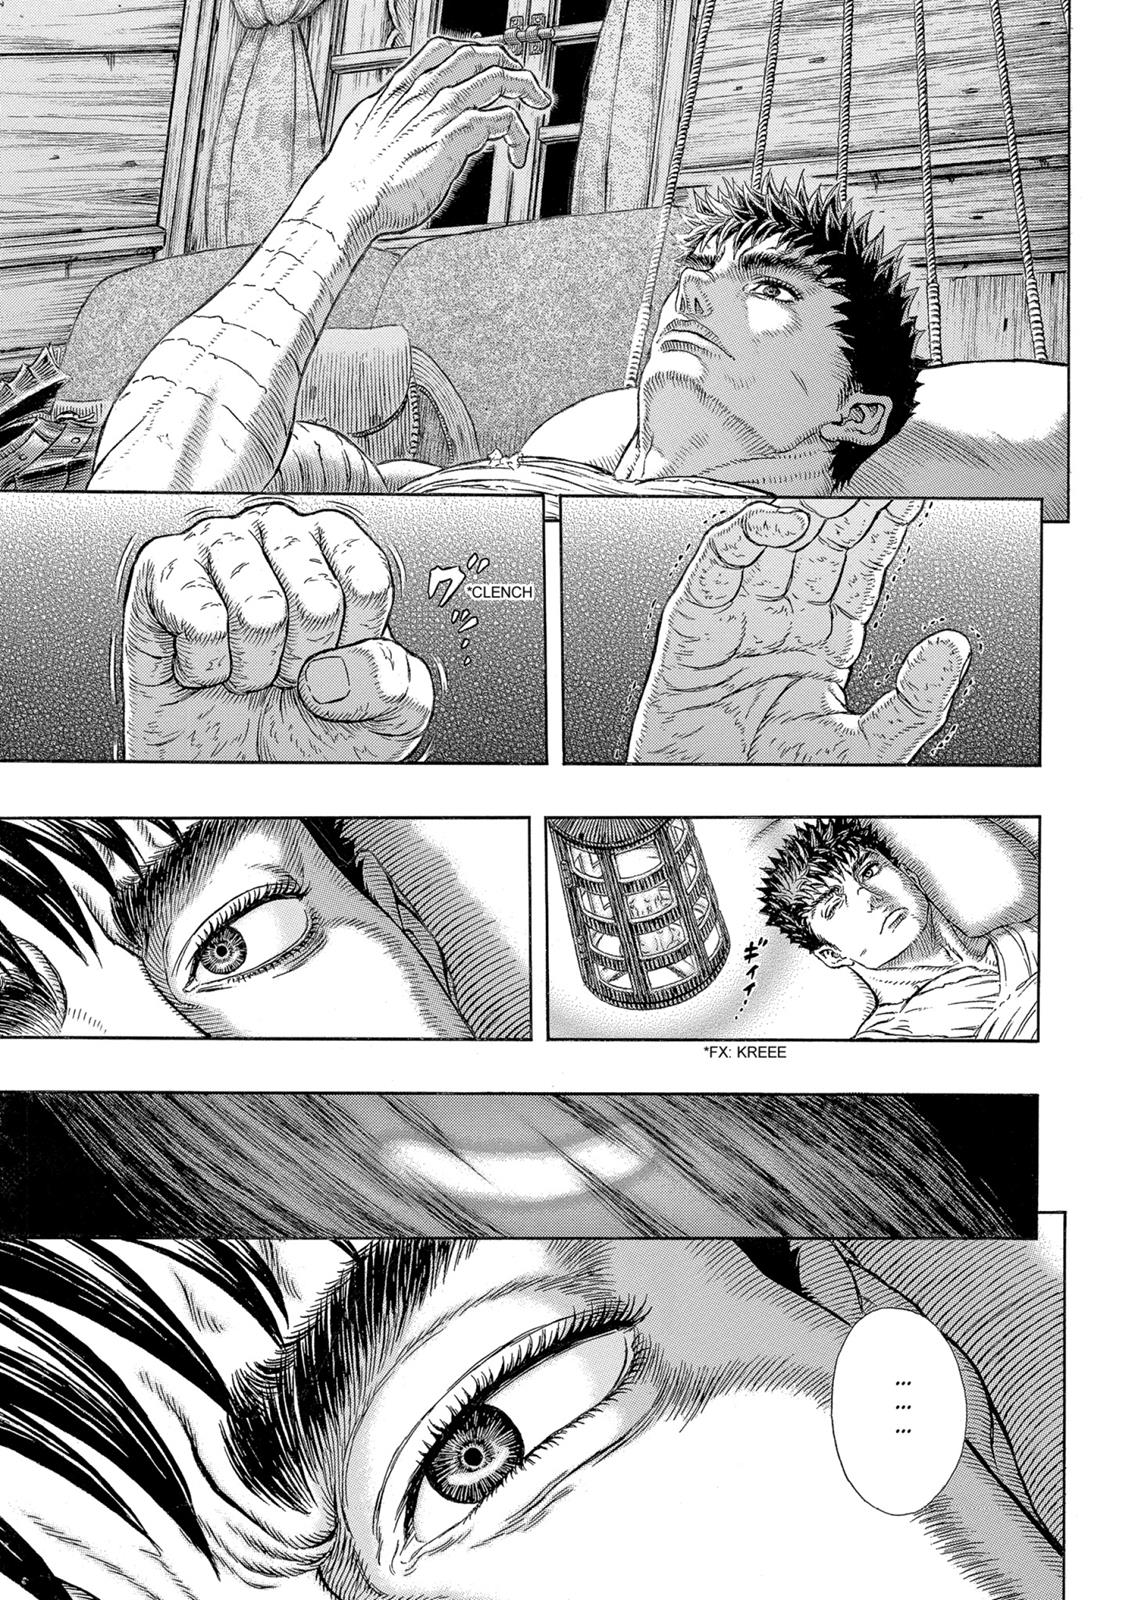 Berserk Manga Chapter 328 image 15